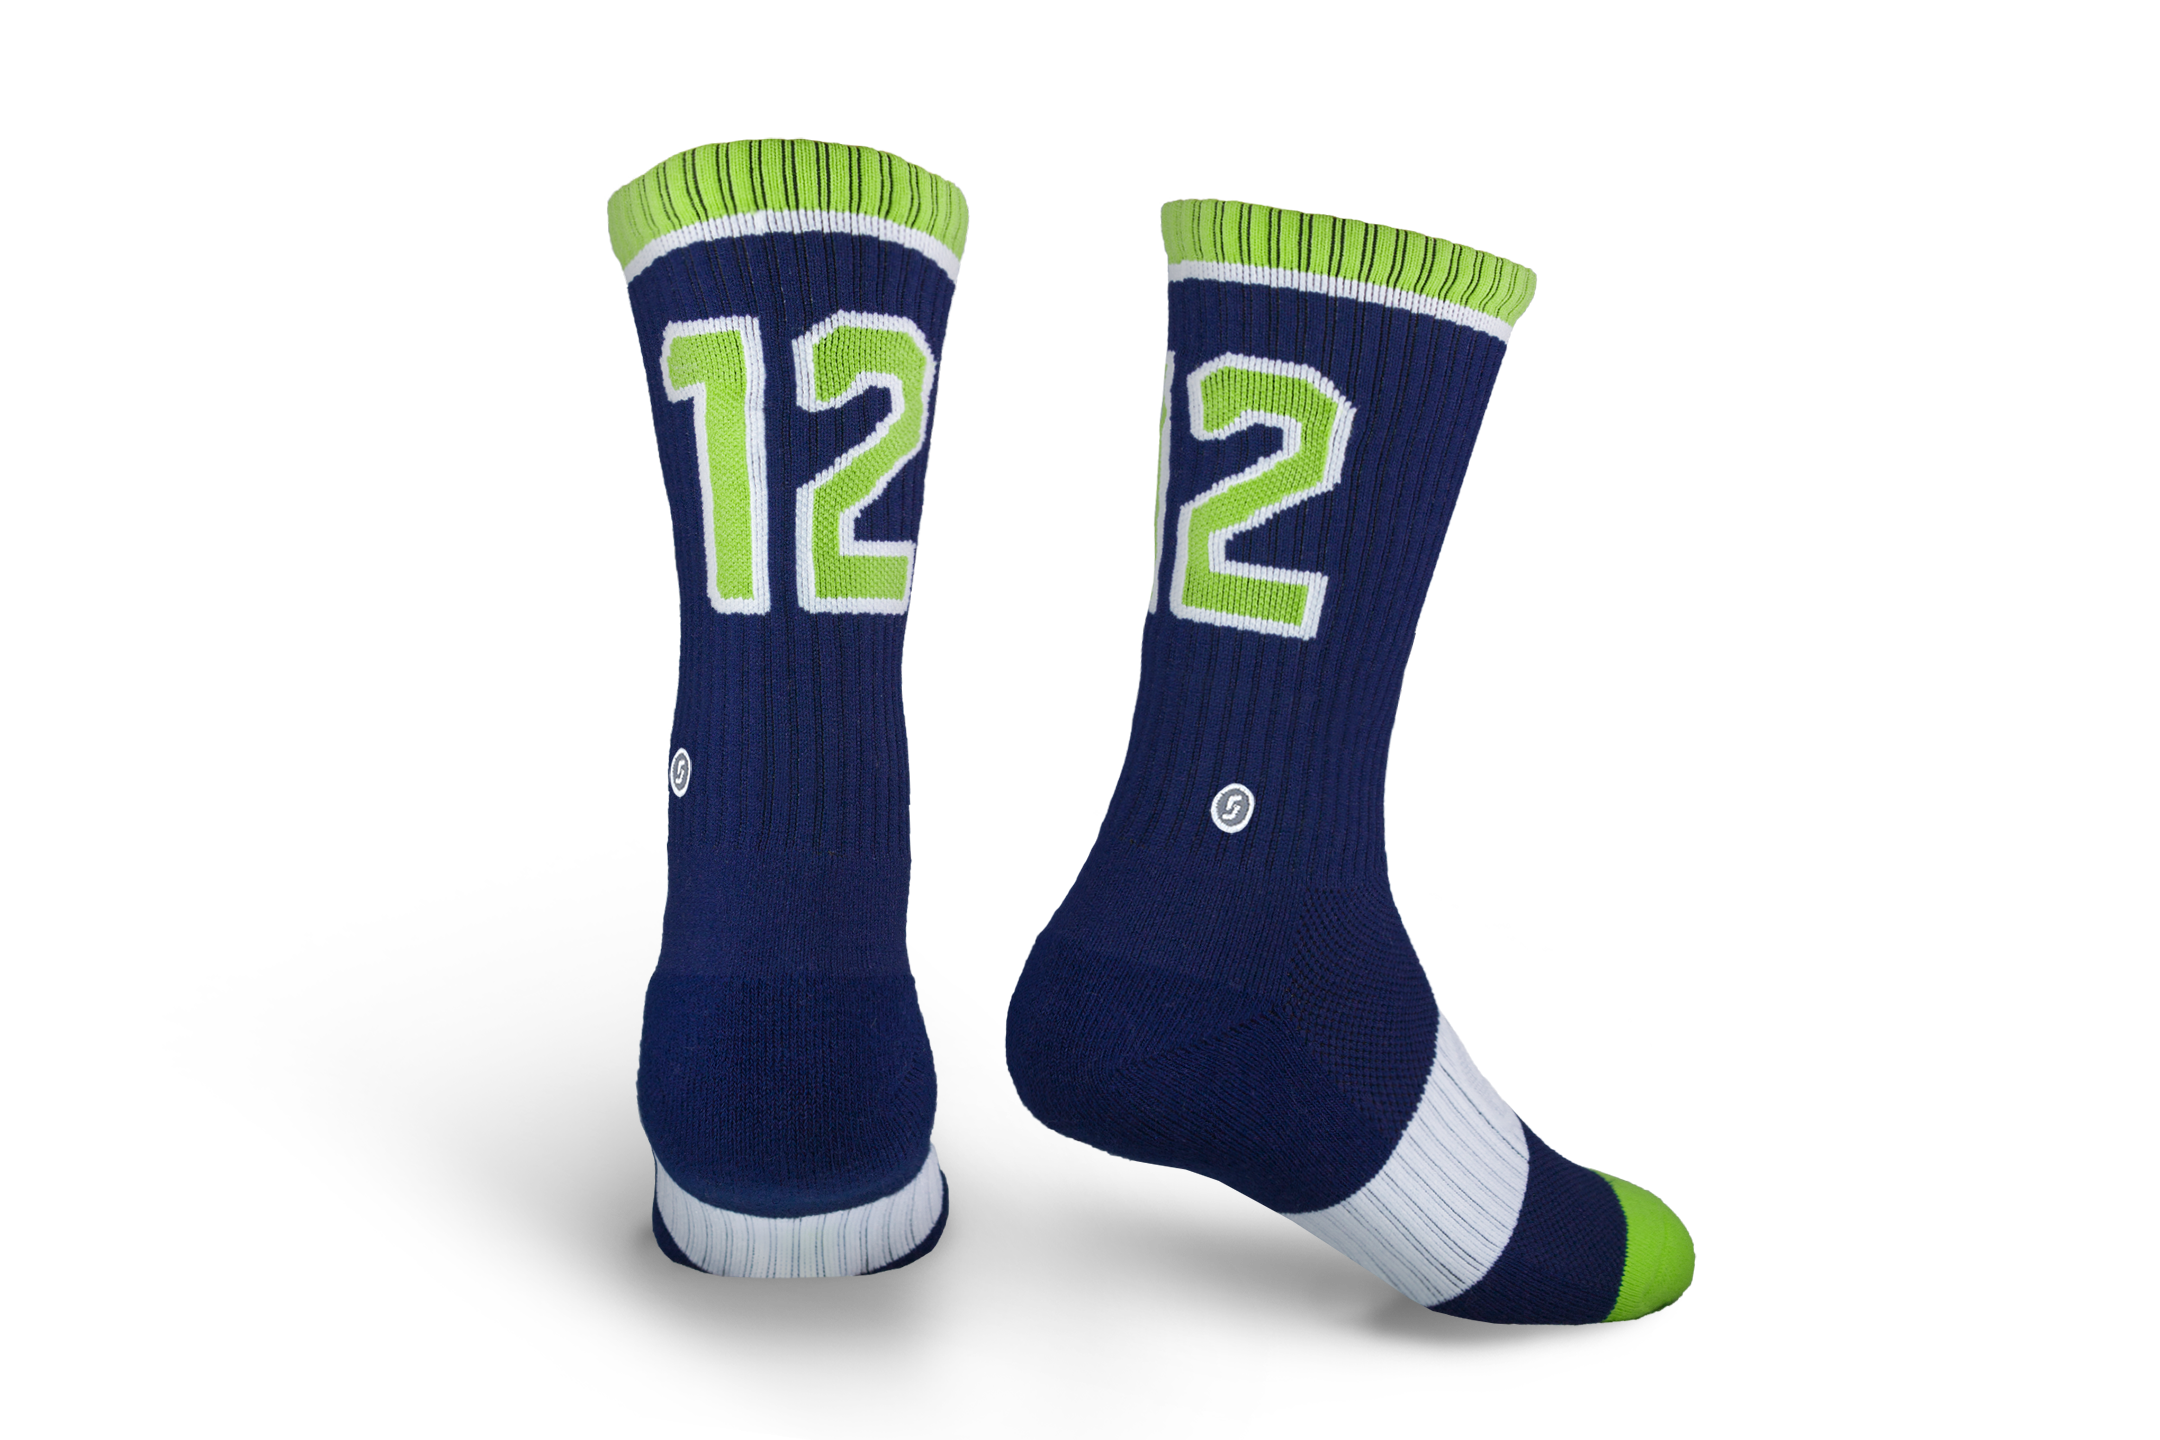 Official Seattle Skyline Socks for Mariners Fans - Fan Gear